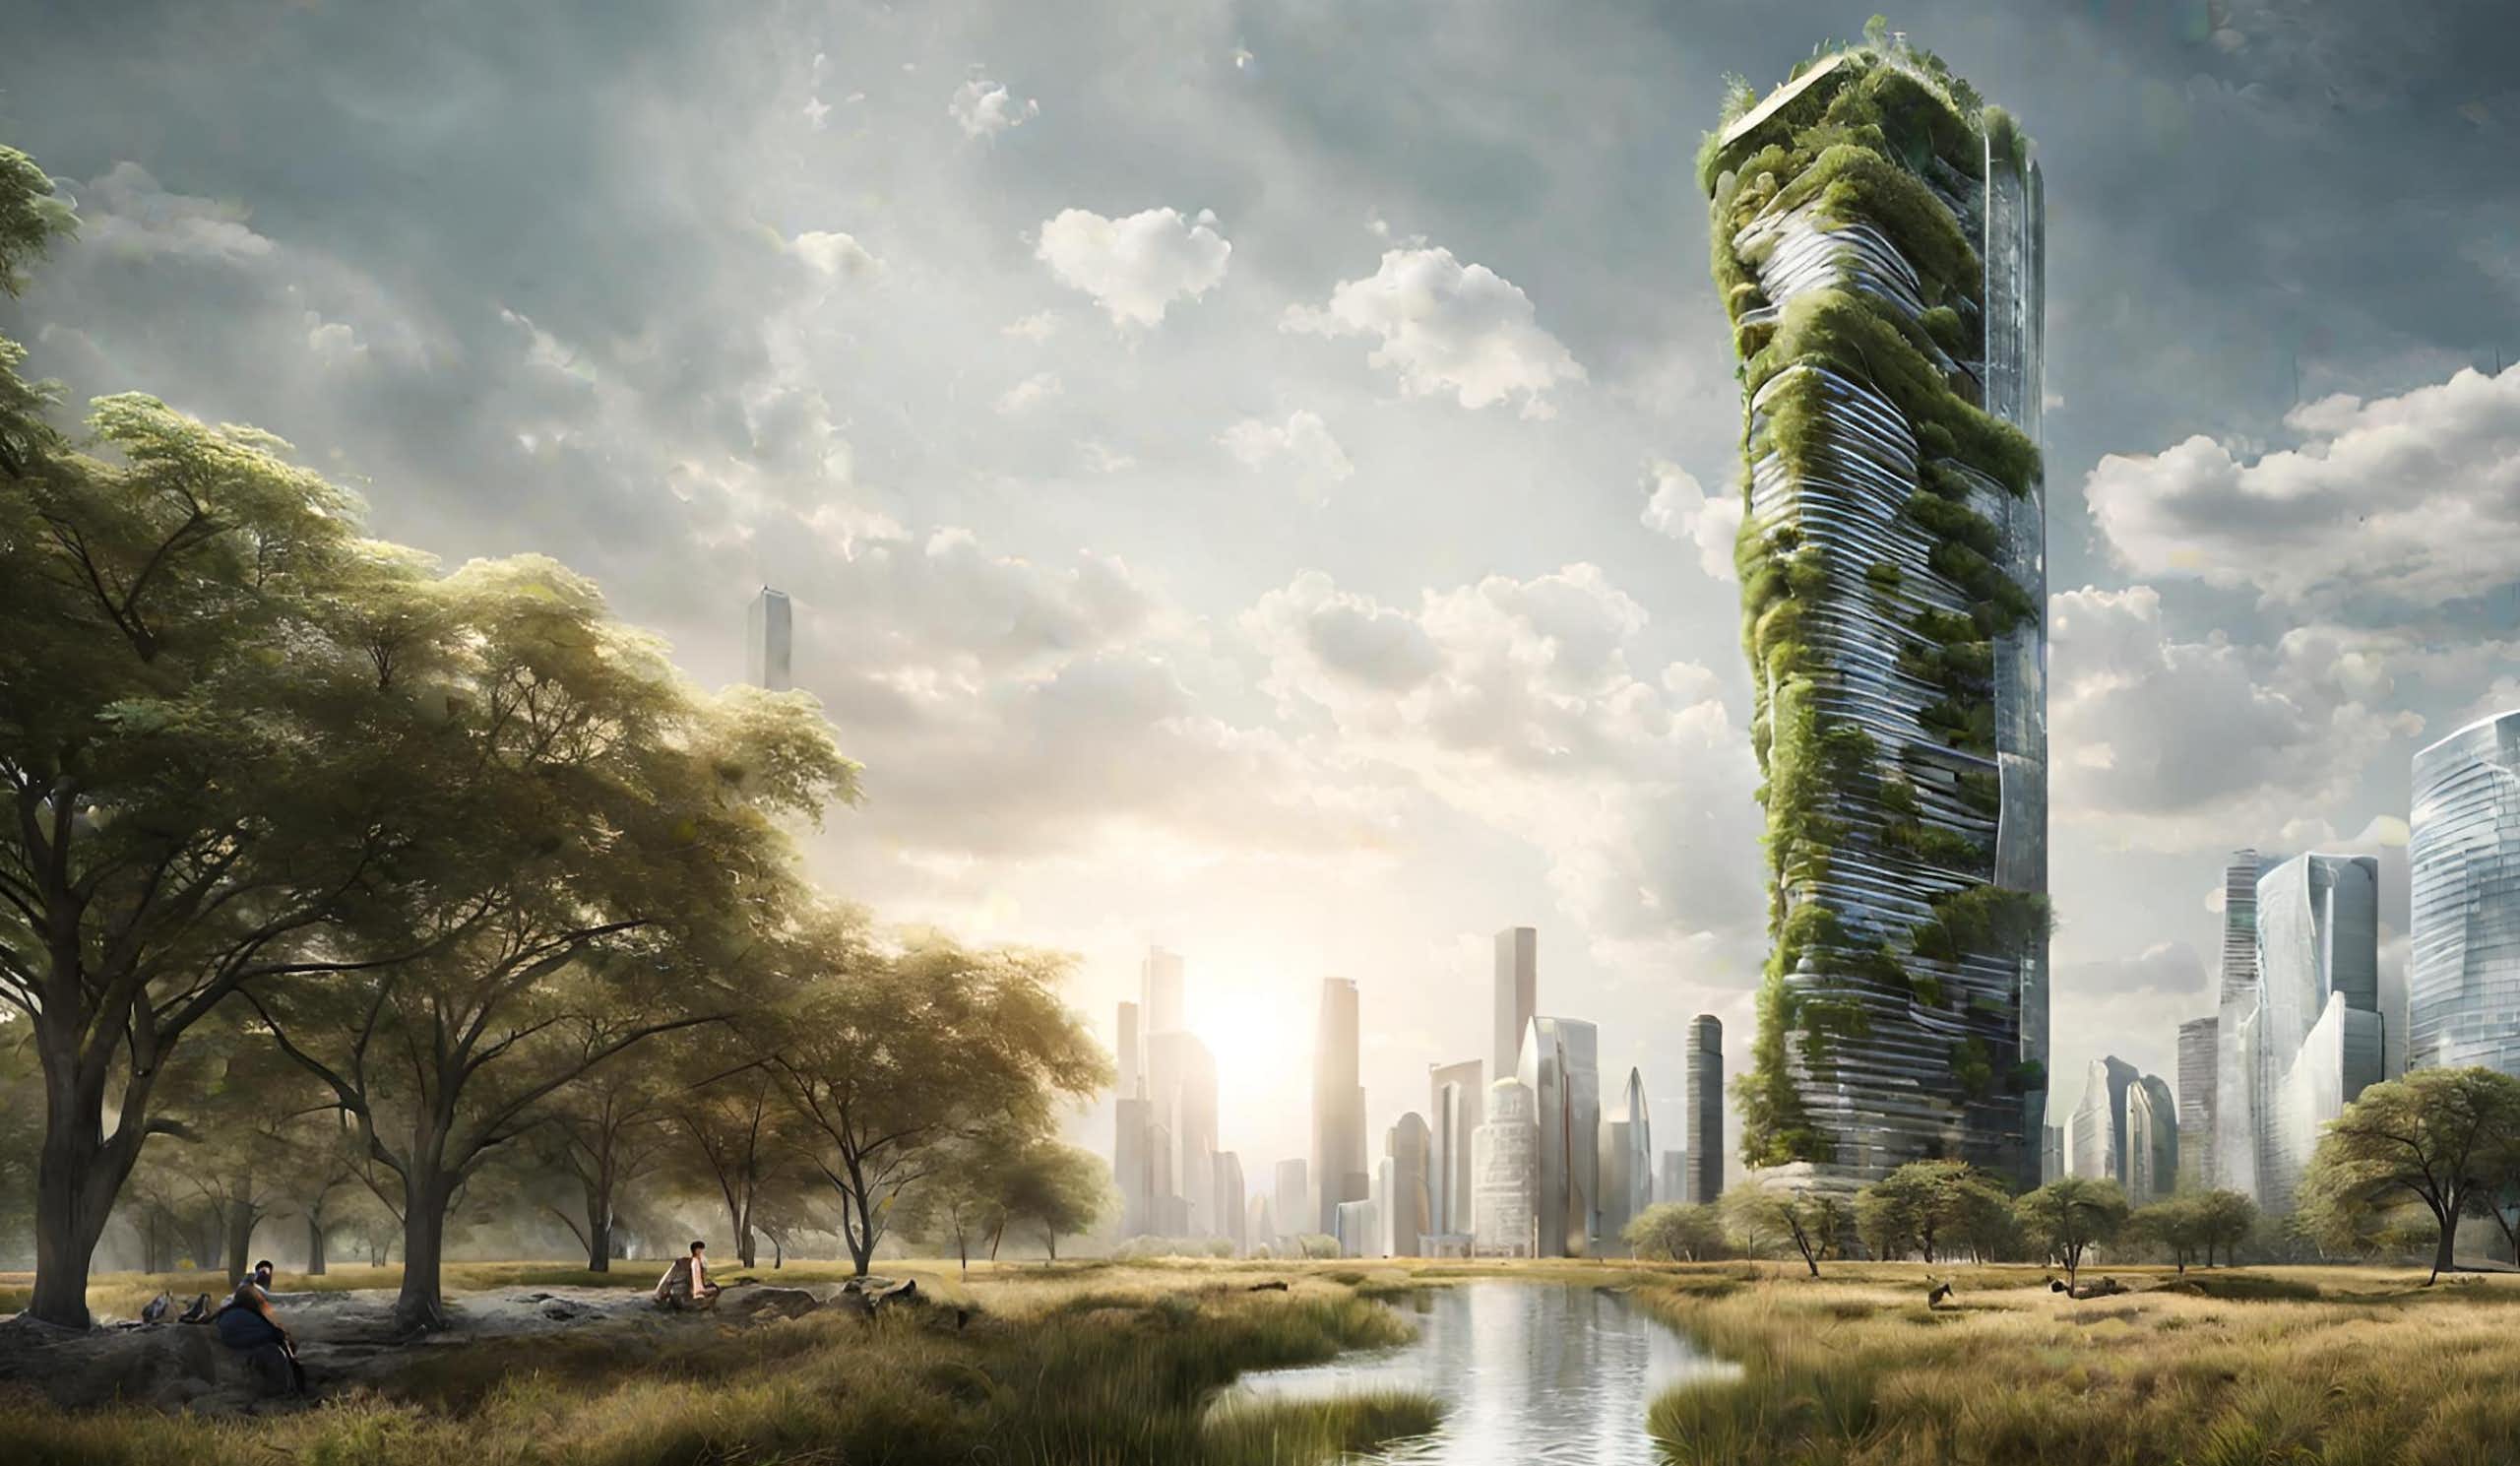 Revolución arquitectónica: diseñar un rascacielos en cien horas